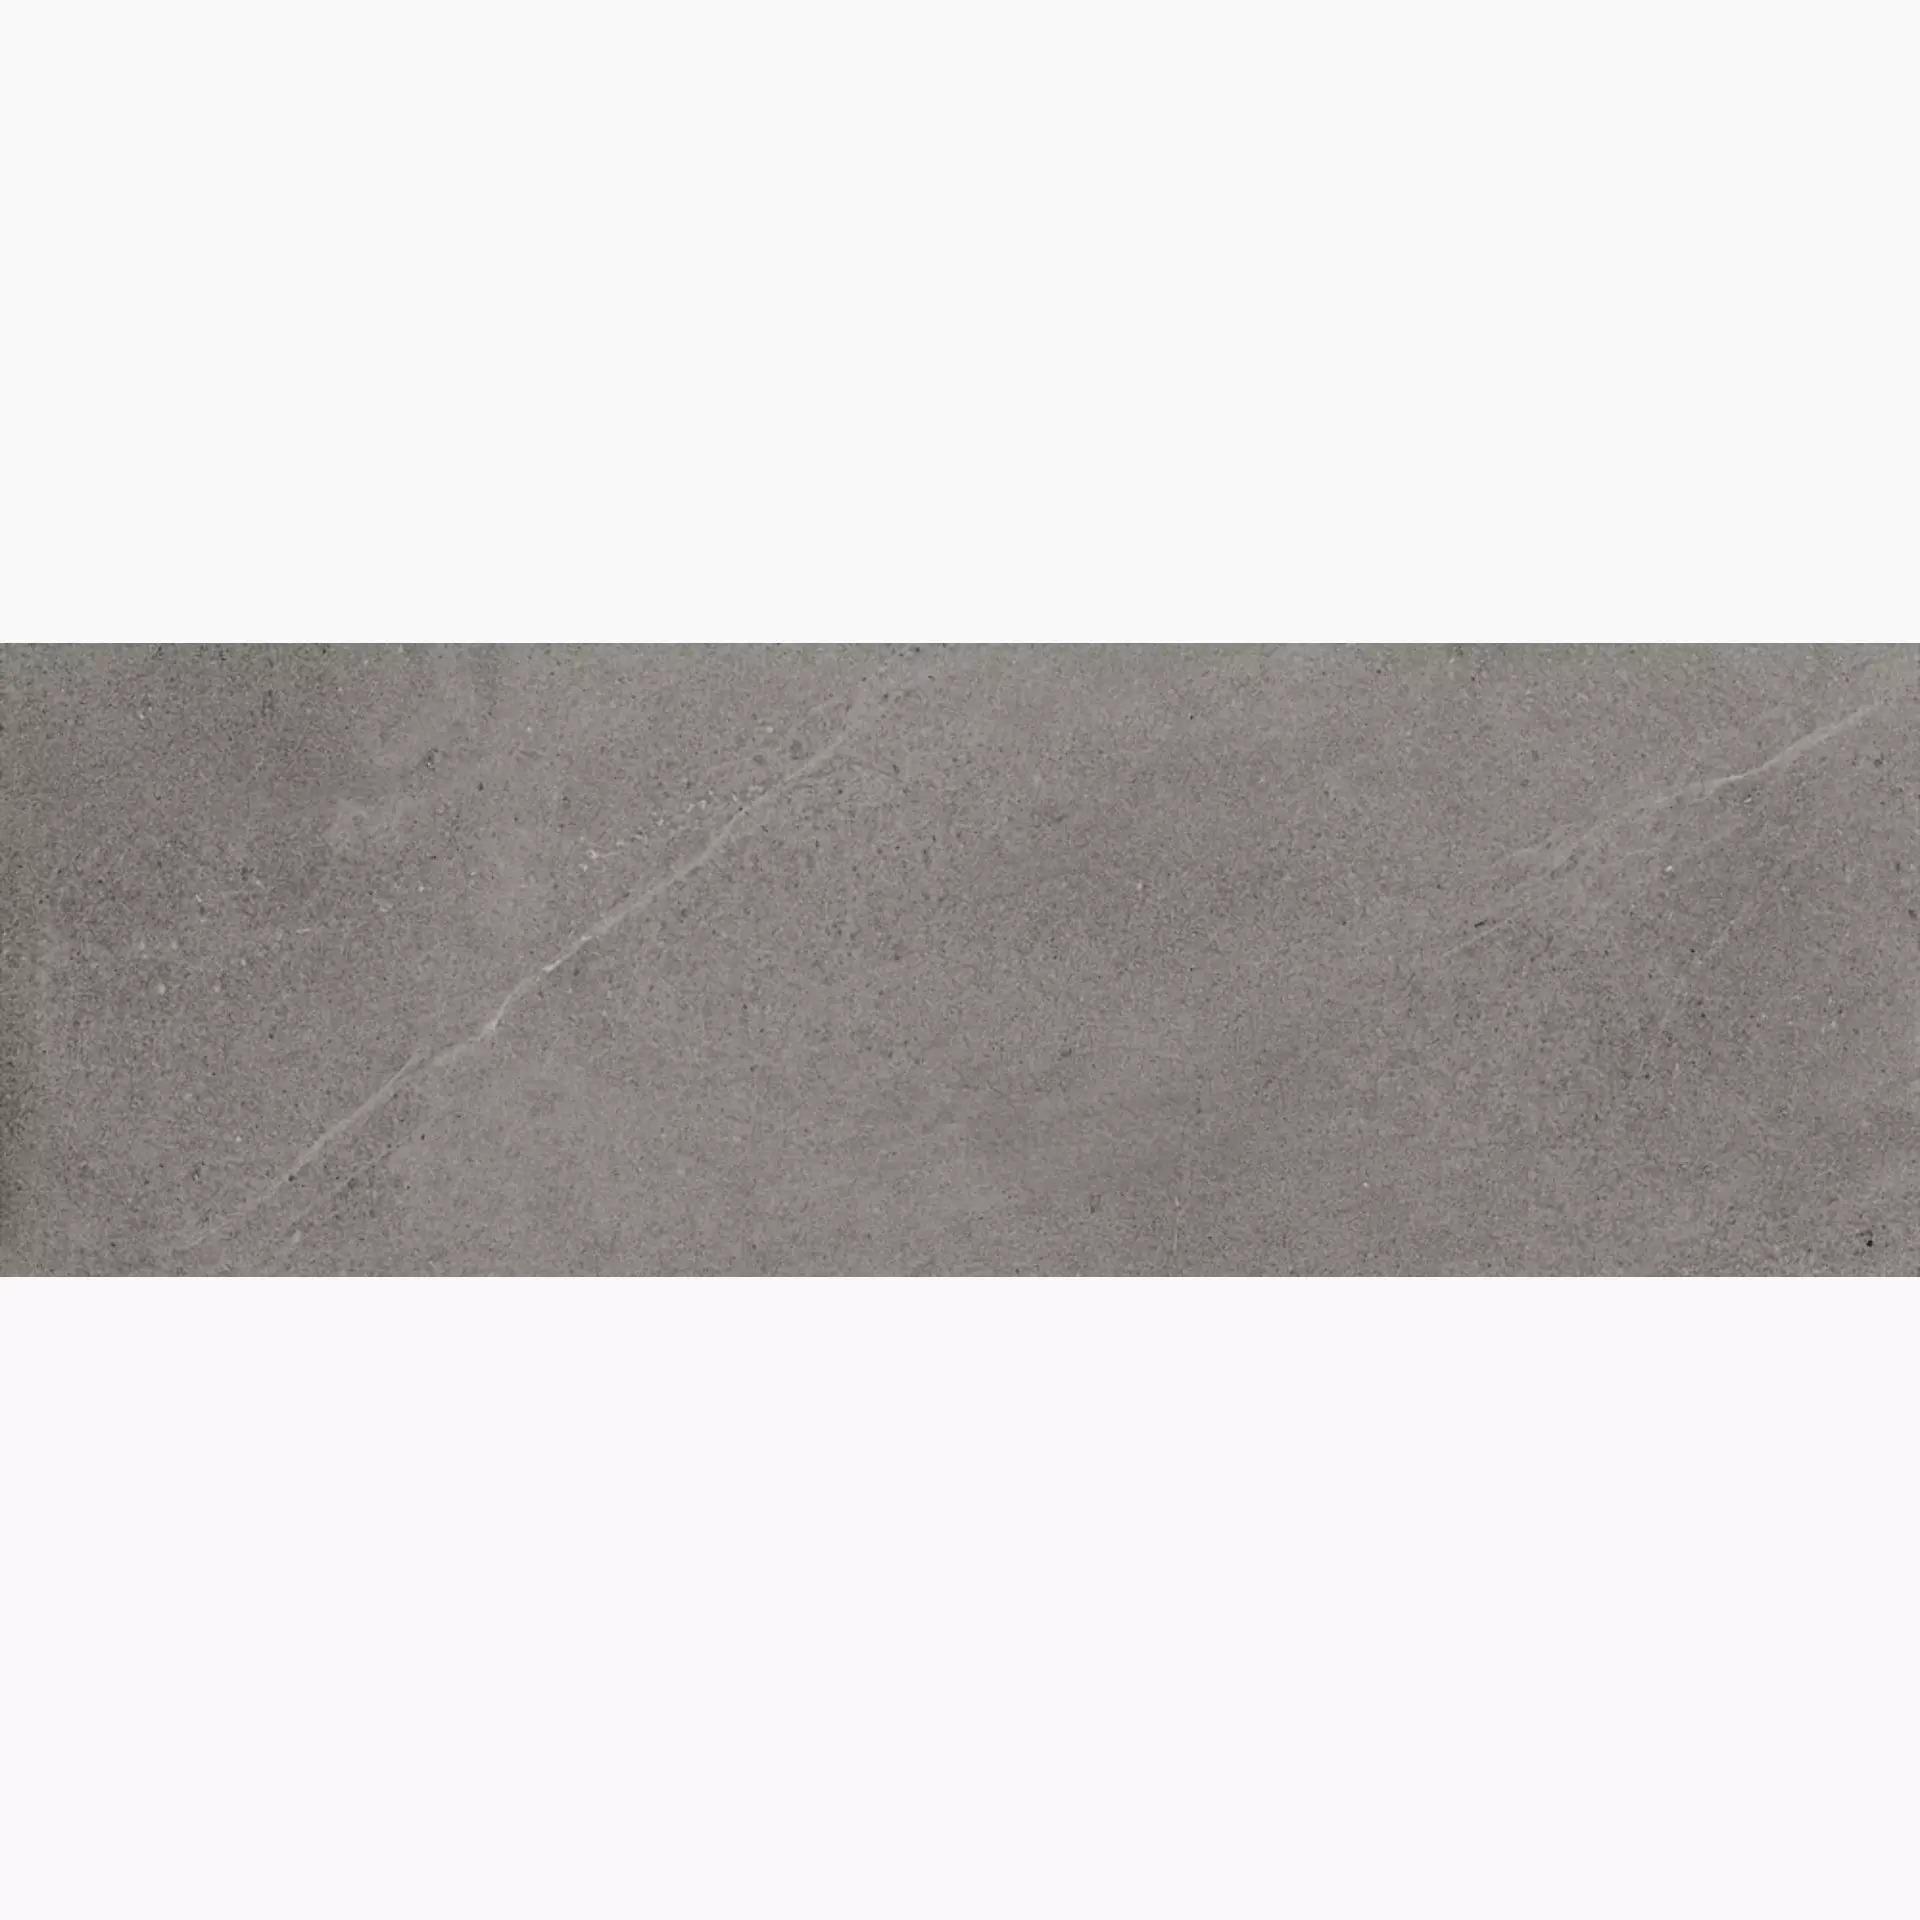 Cottodeste Kerlite Limestone Slate Naturale Protect Slate EK7LS30 antibakteriell natur 100x300cm rektifiziert 5,5mm